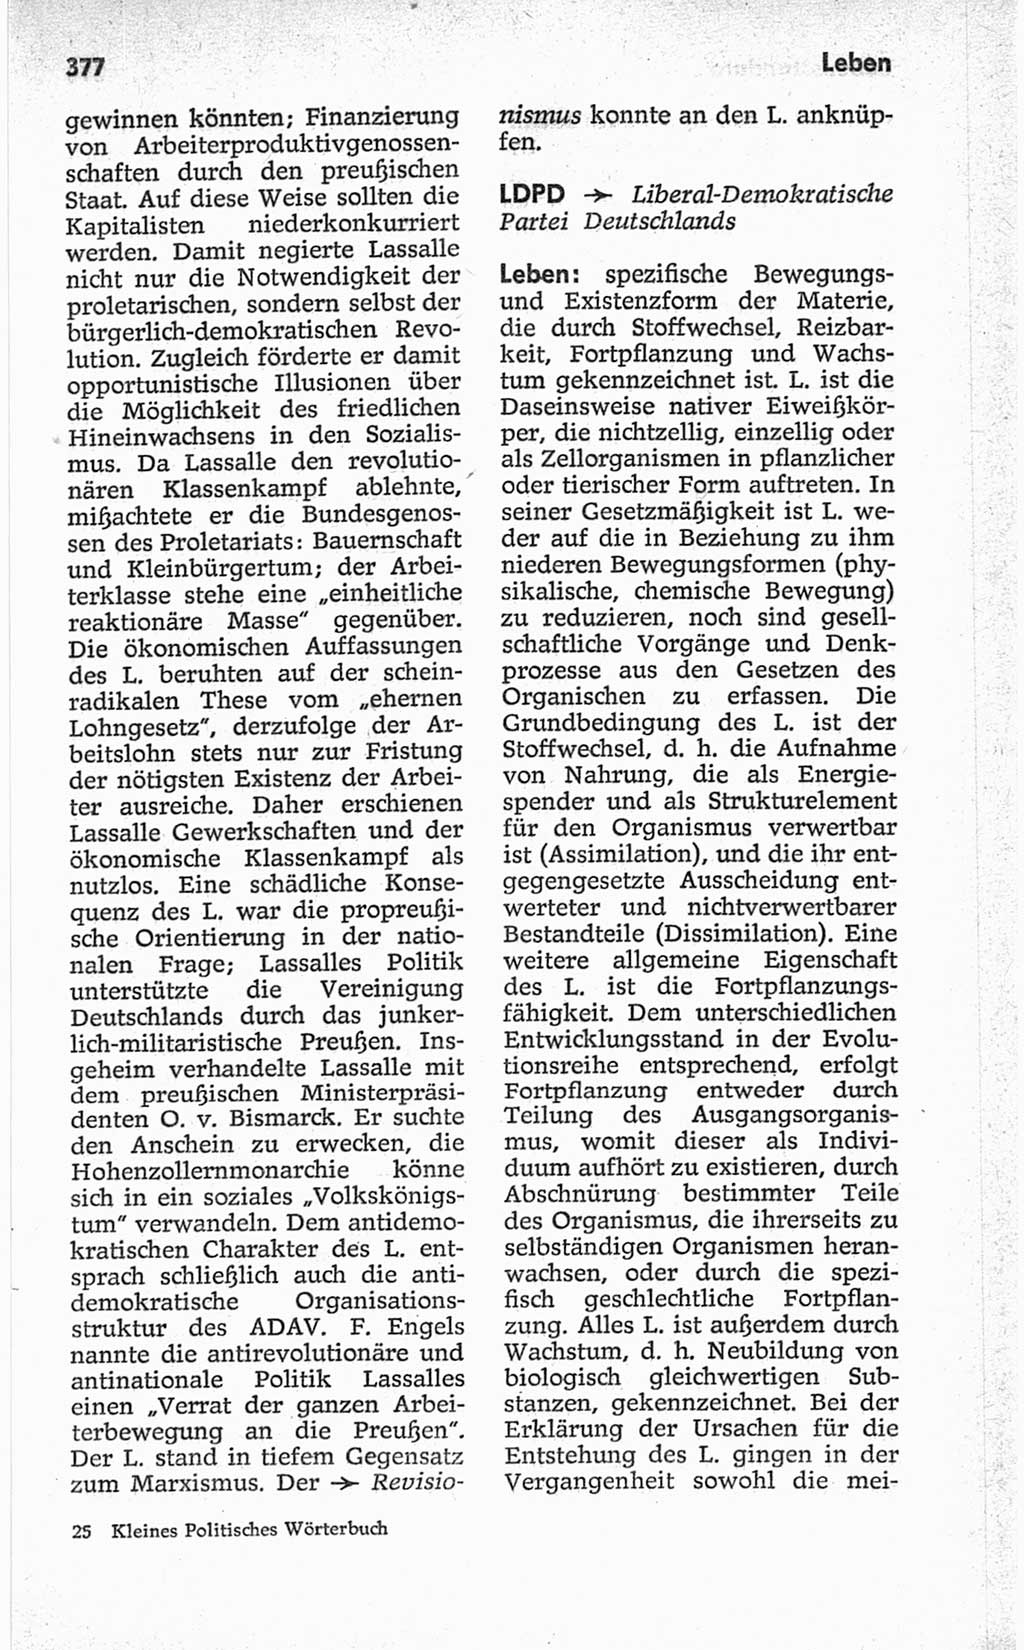 Kleines politisches Wörterbuch [Deutsche Demokratische Republik (DDR)] 1967, Seite 377 (Kl. pol. Wb. DDR 1967, S. 377)